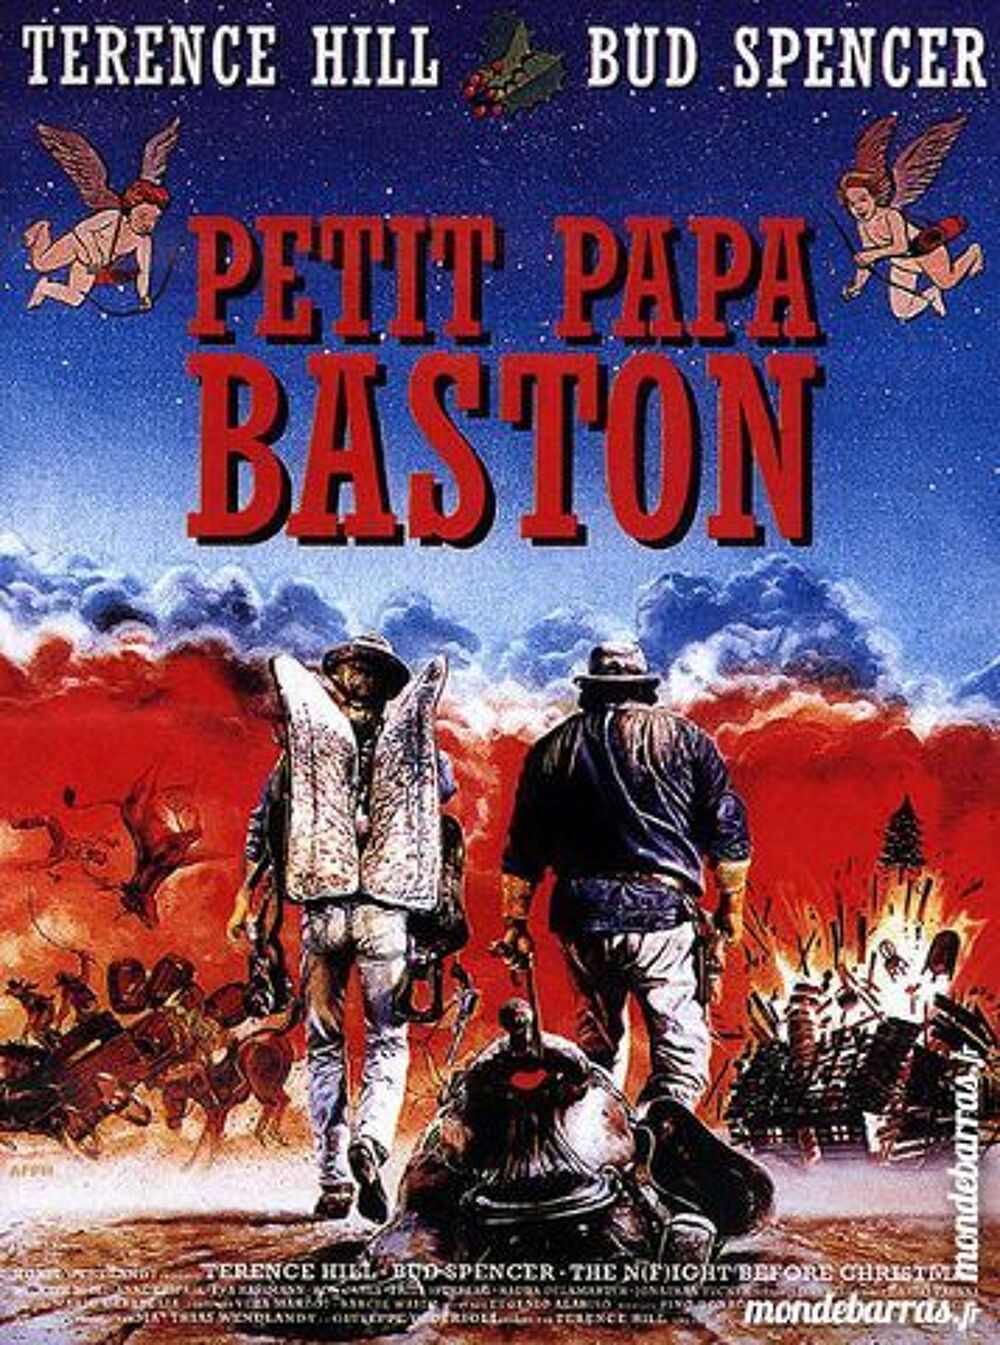 K7 Vhs: Petit papa baston (343) DVD et blu-ray